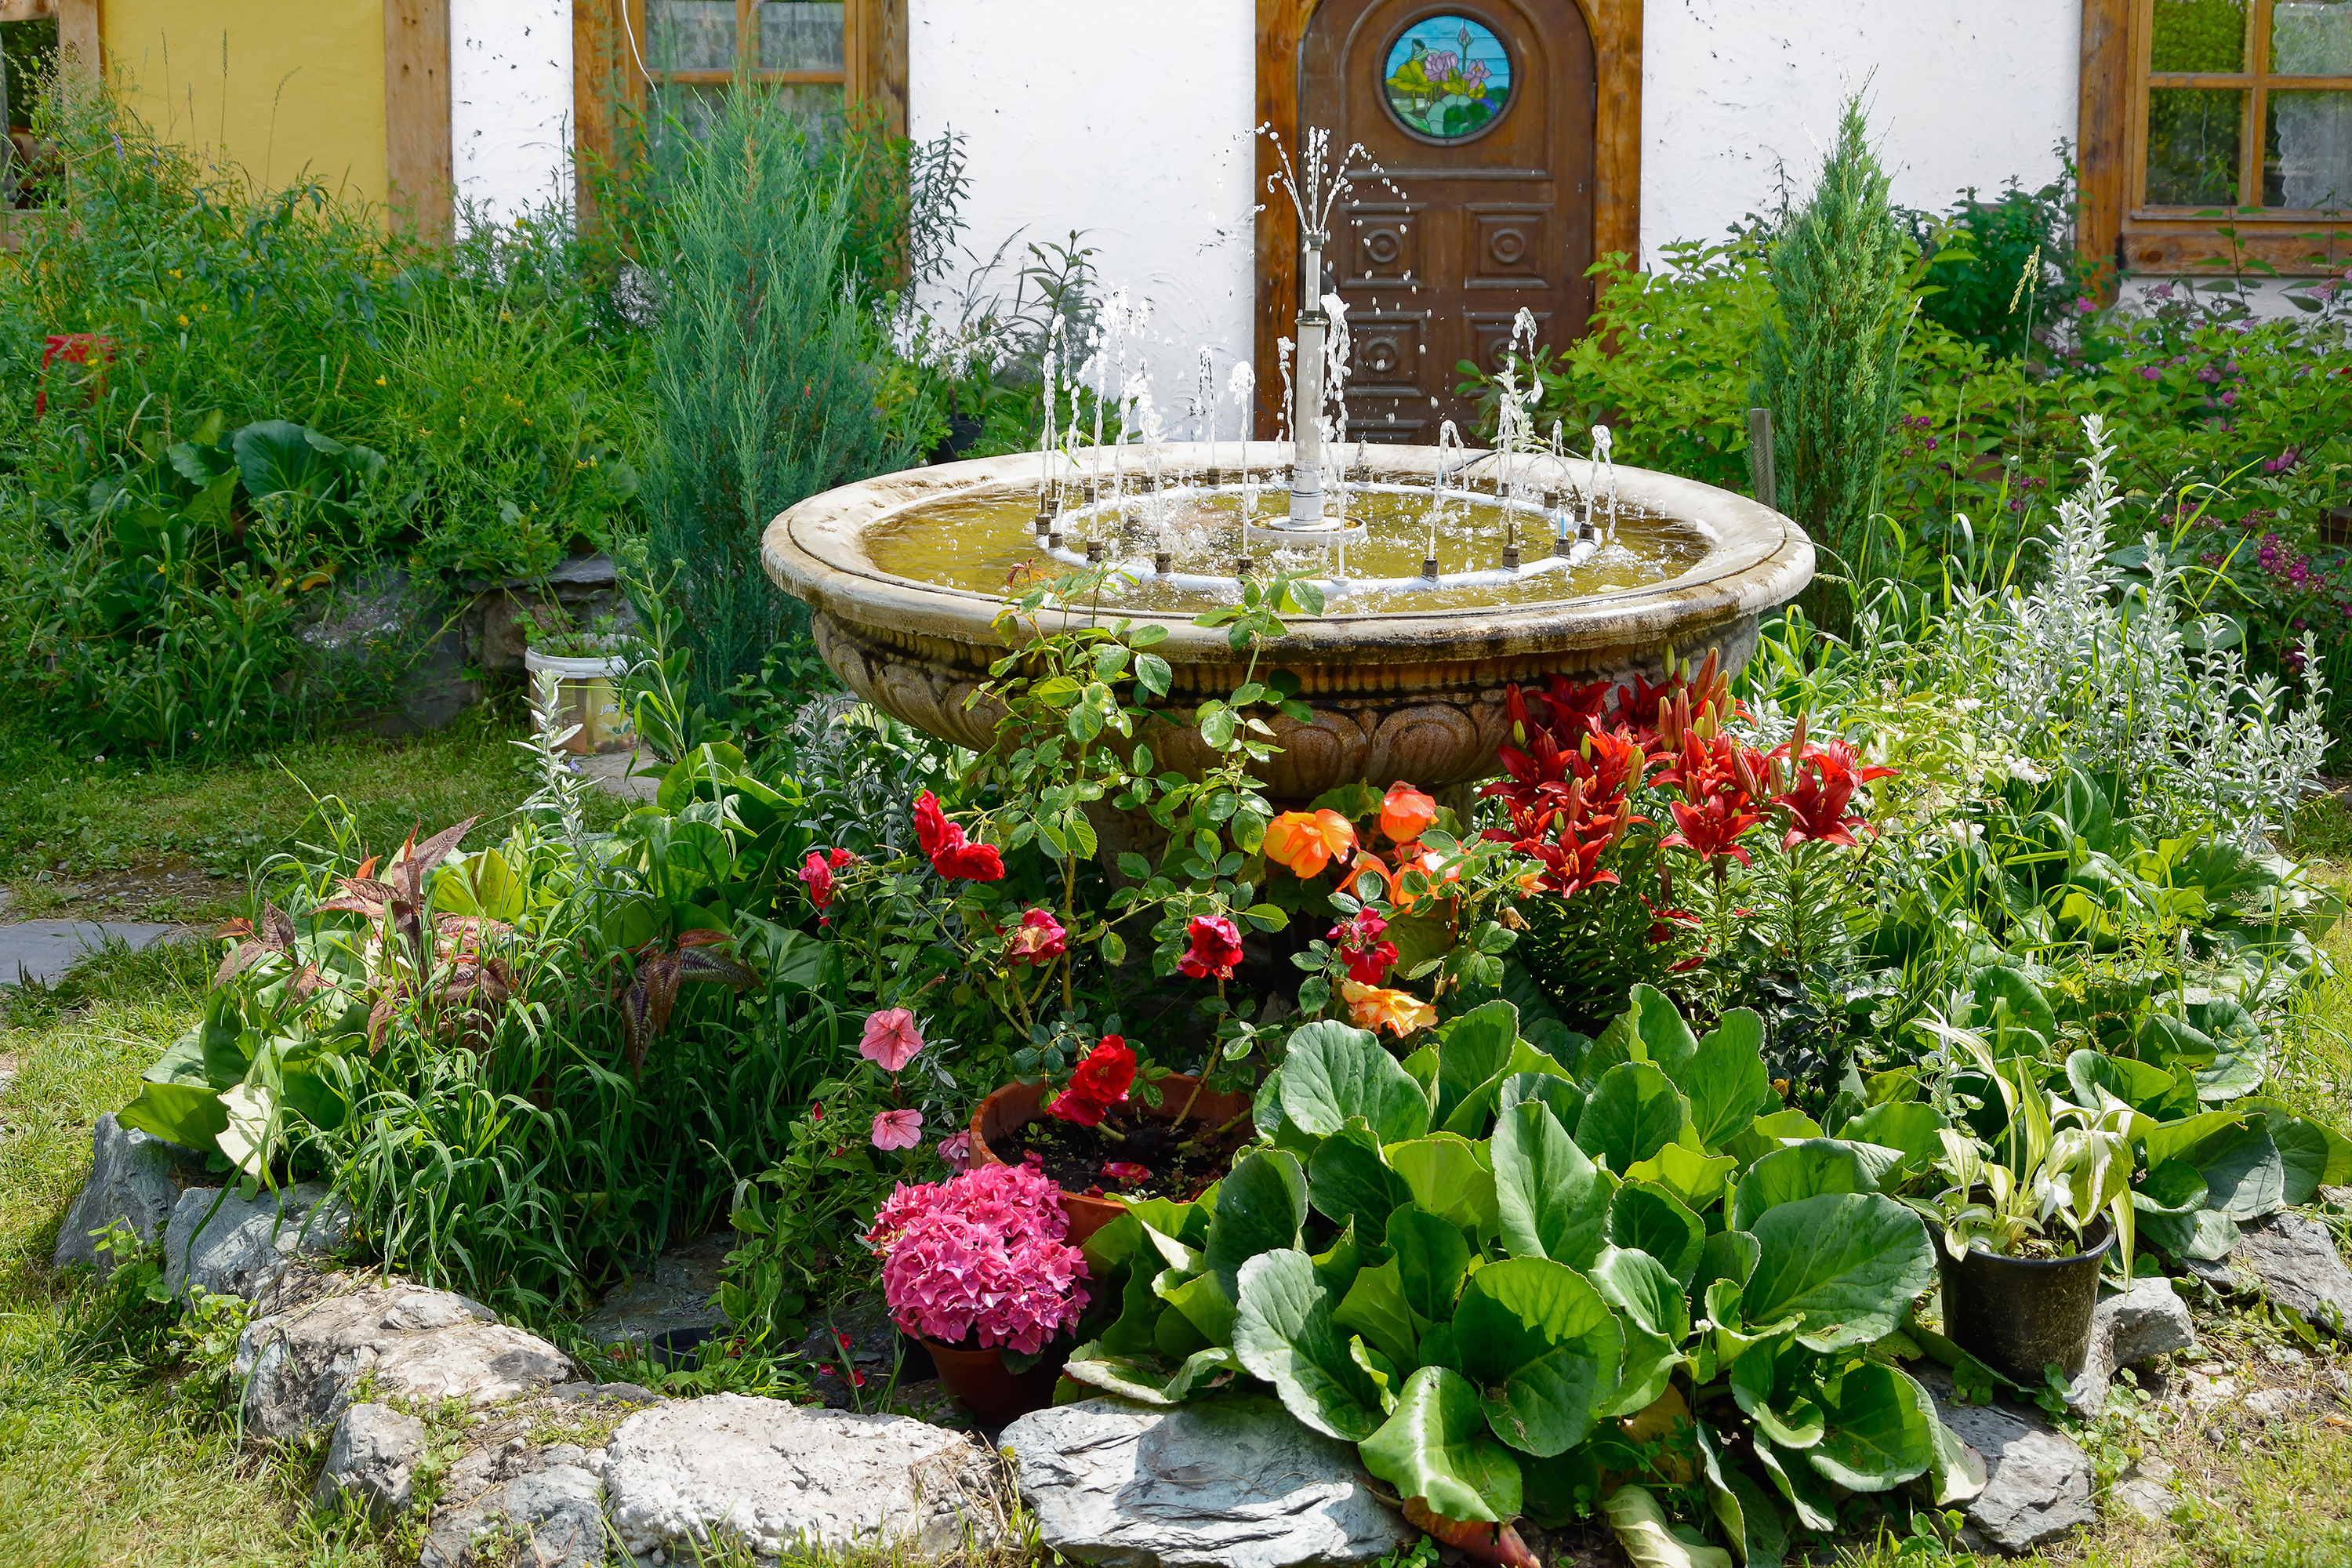 Profitez des avantages des fontaines solaires ! – jardins du monde.com